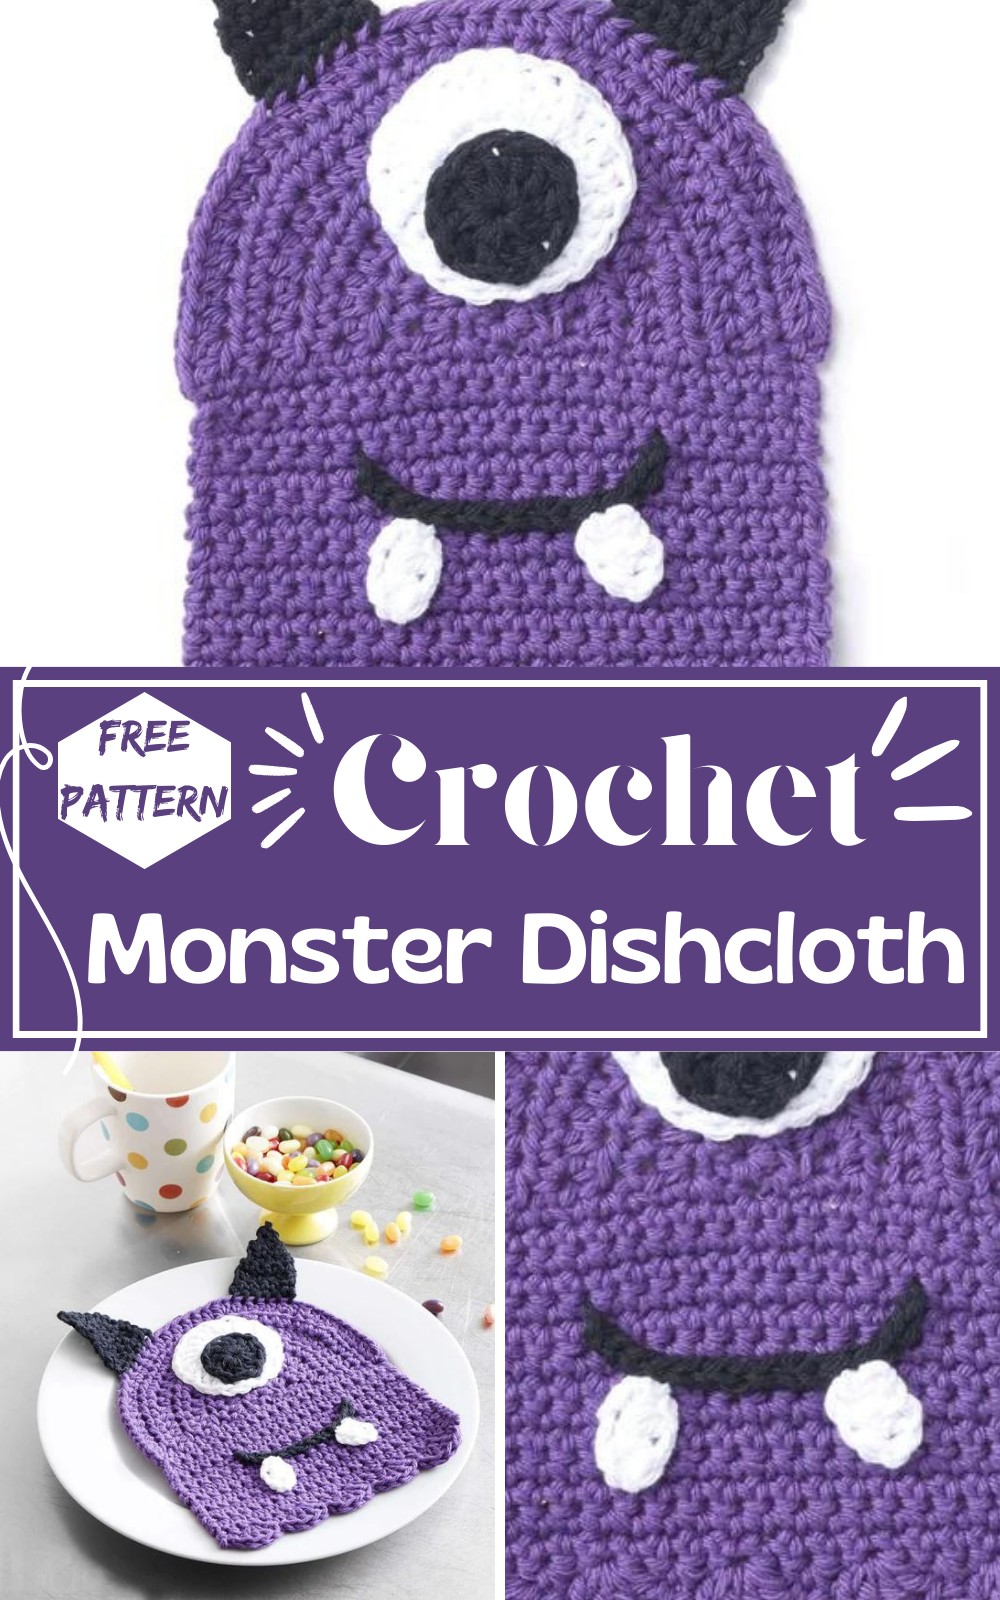 Crochet Monster Dishcloth Pattern